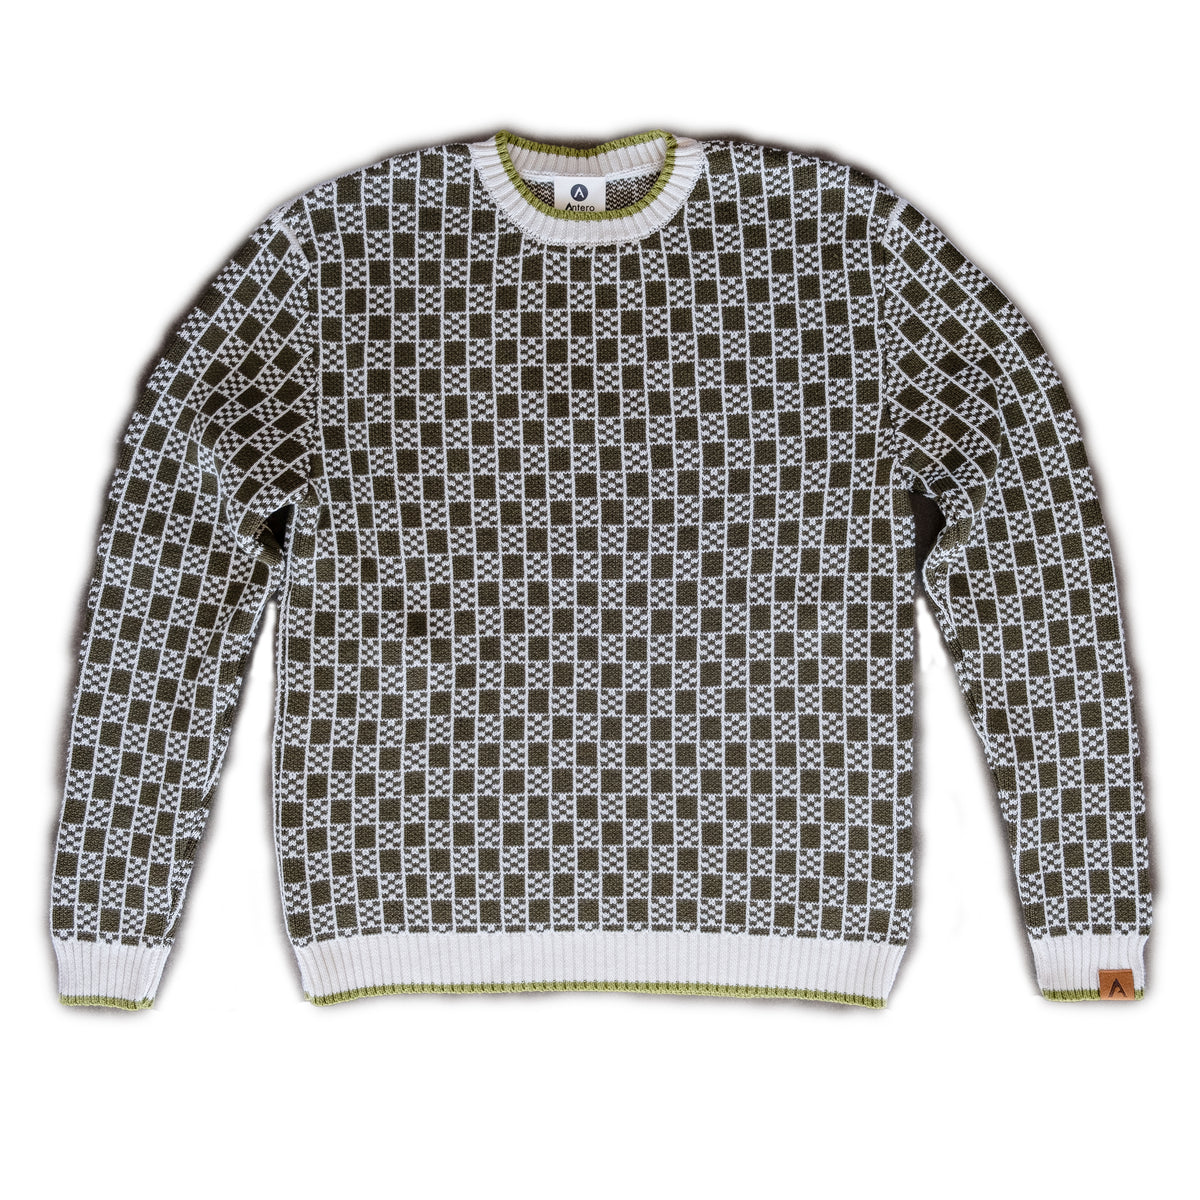 Louis Vuitton Men's Crewneck Sweater Cotton and Acrylic Blend